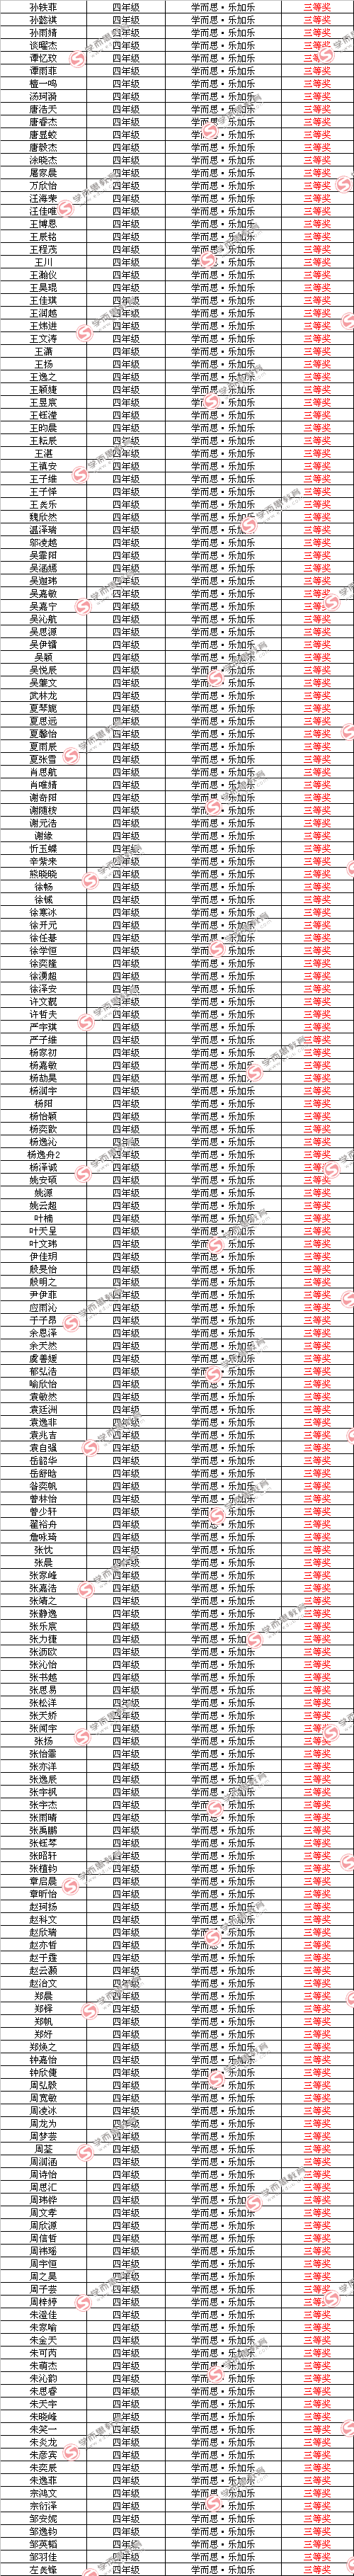 第十届中环杯决赛入围名单（四年级组）3